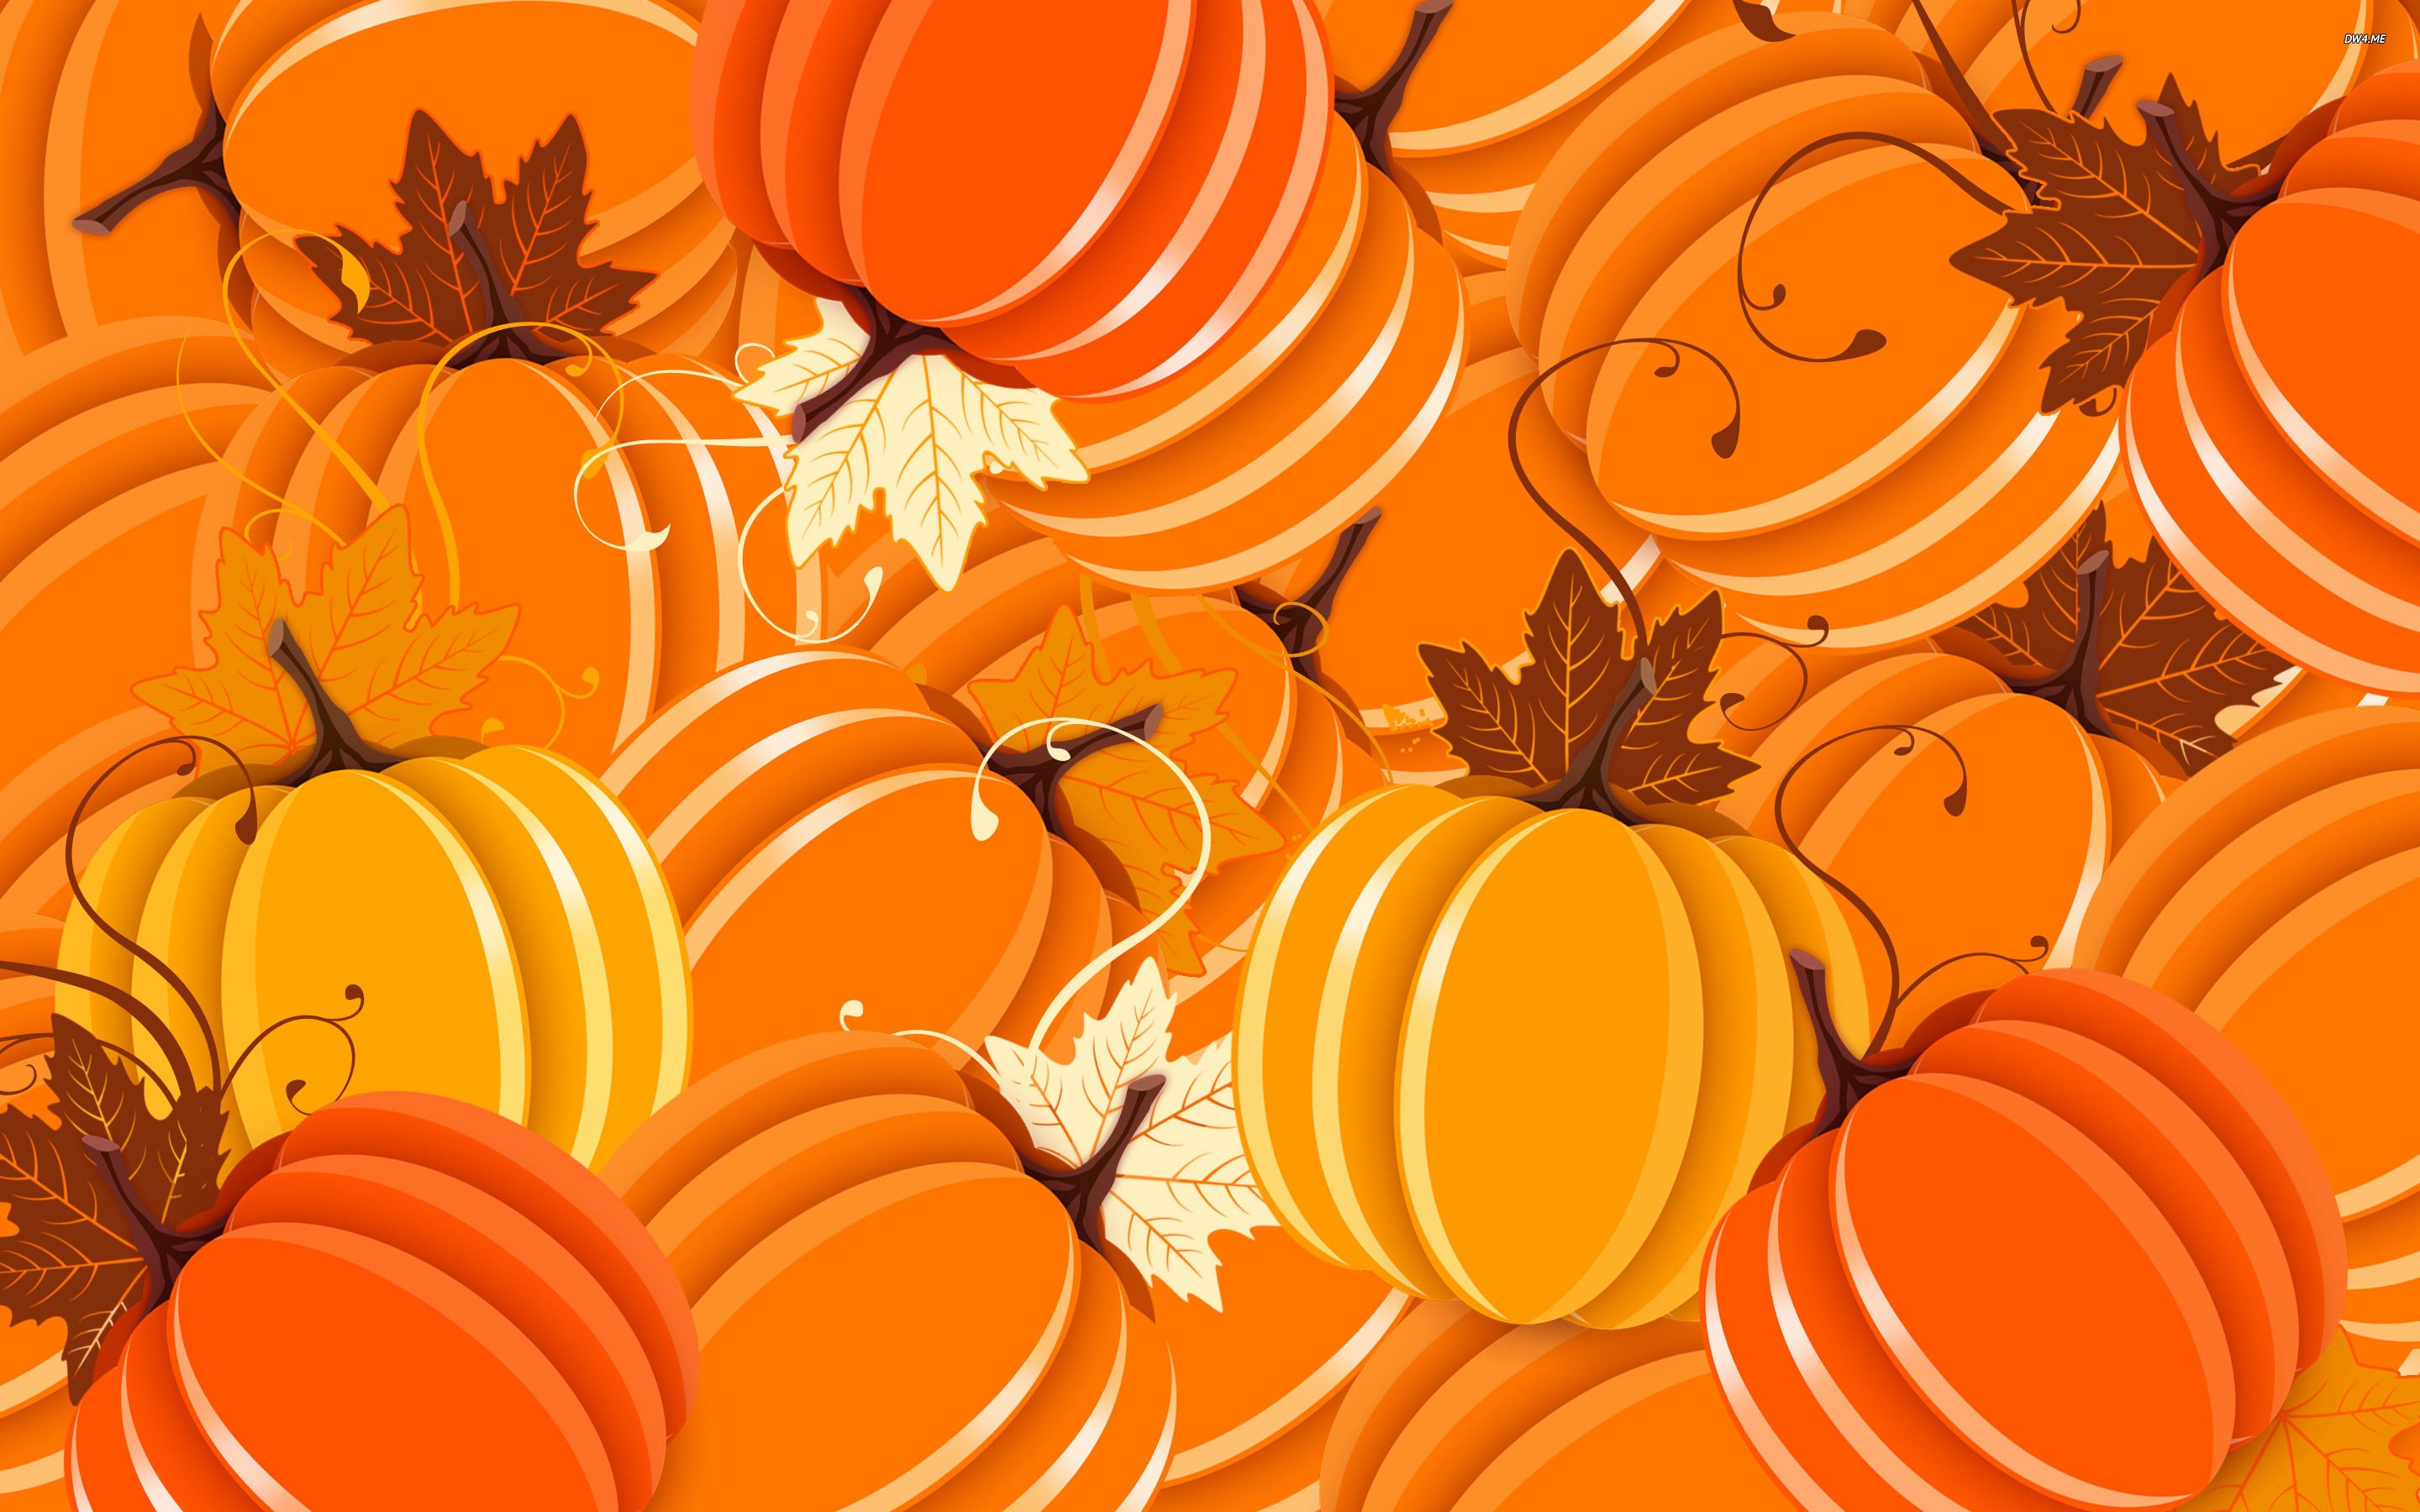 Pumpkin Desktop Background. Pumpkin Wallpaper, Halloween Pumpkin Wallpaper and Fall Pumpkin Wallpaper